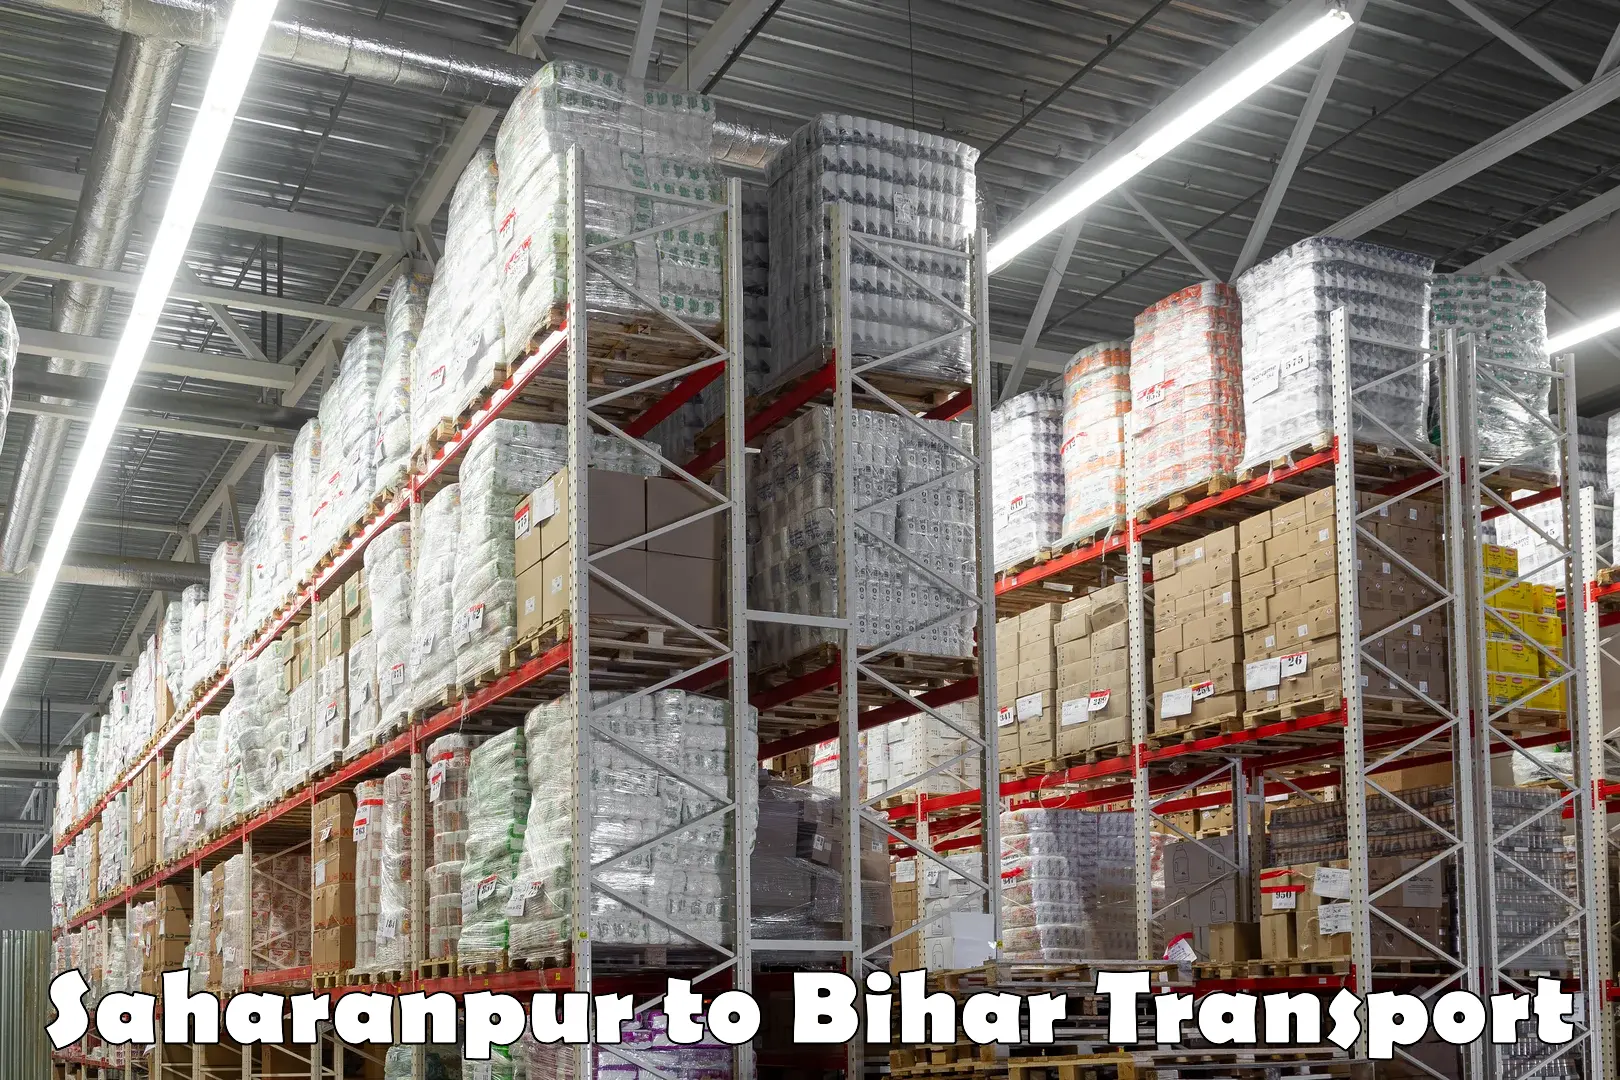 Bike shipping service Saharanpur to Bihar